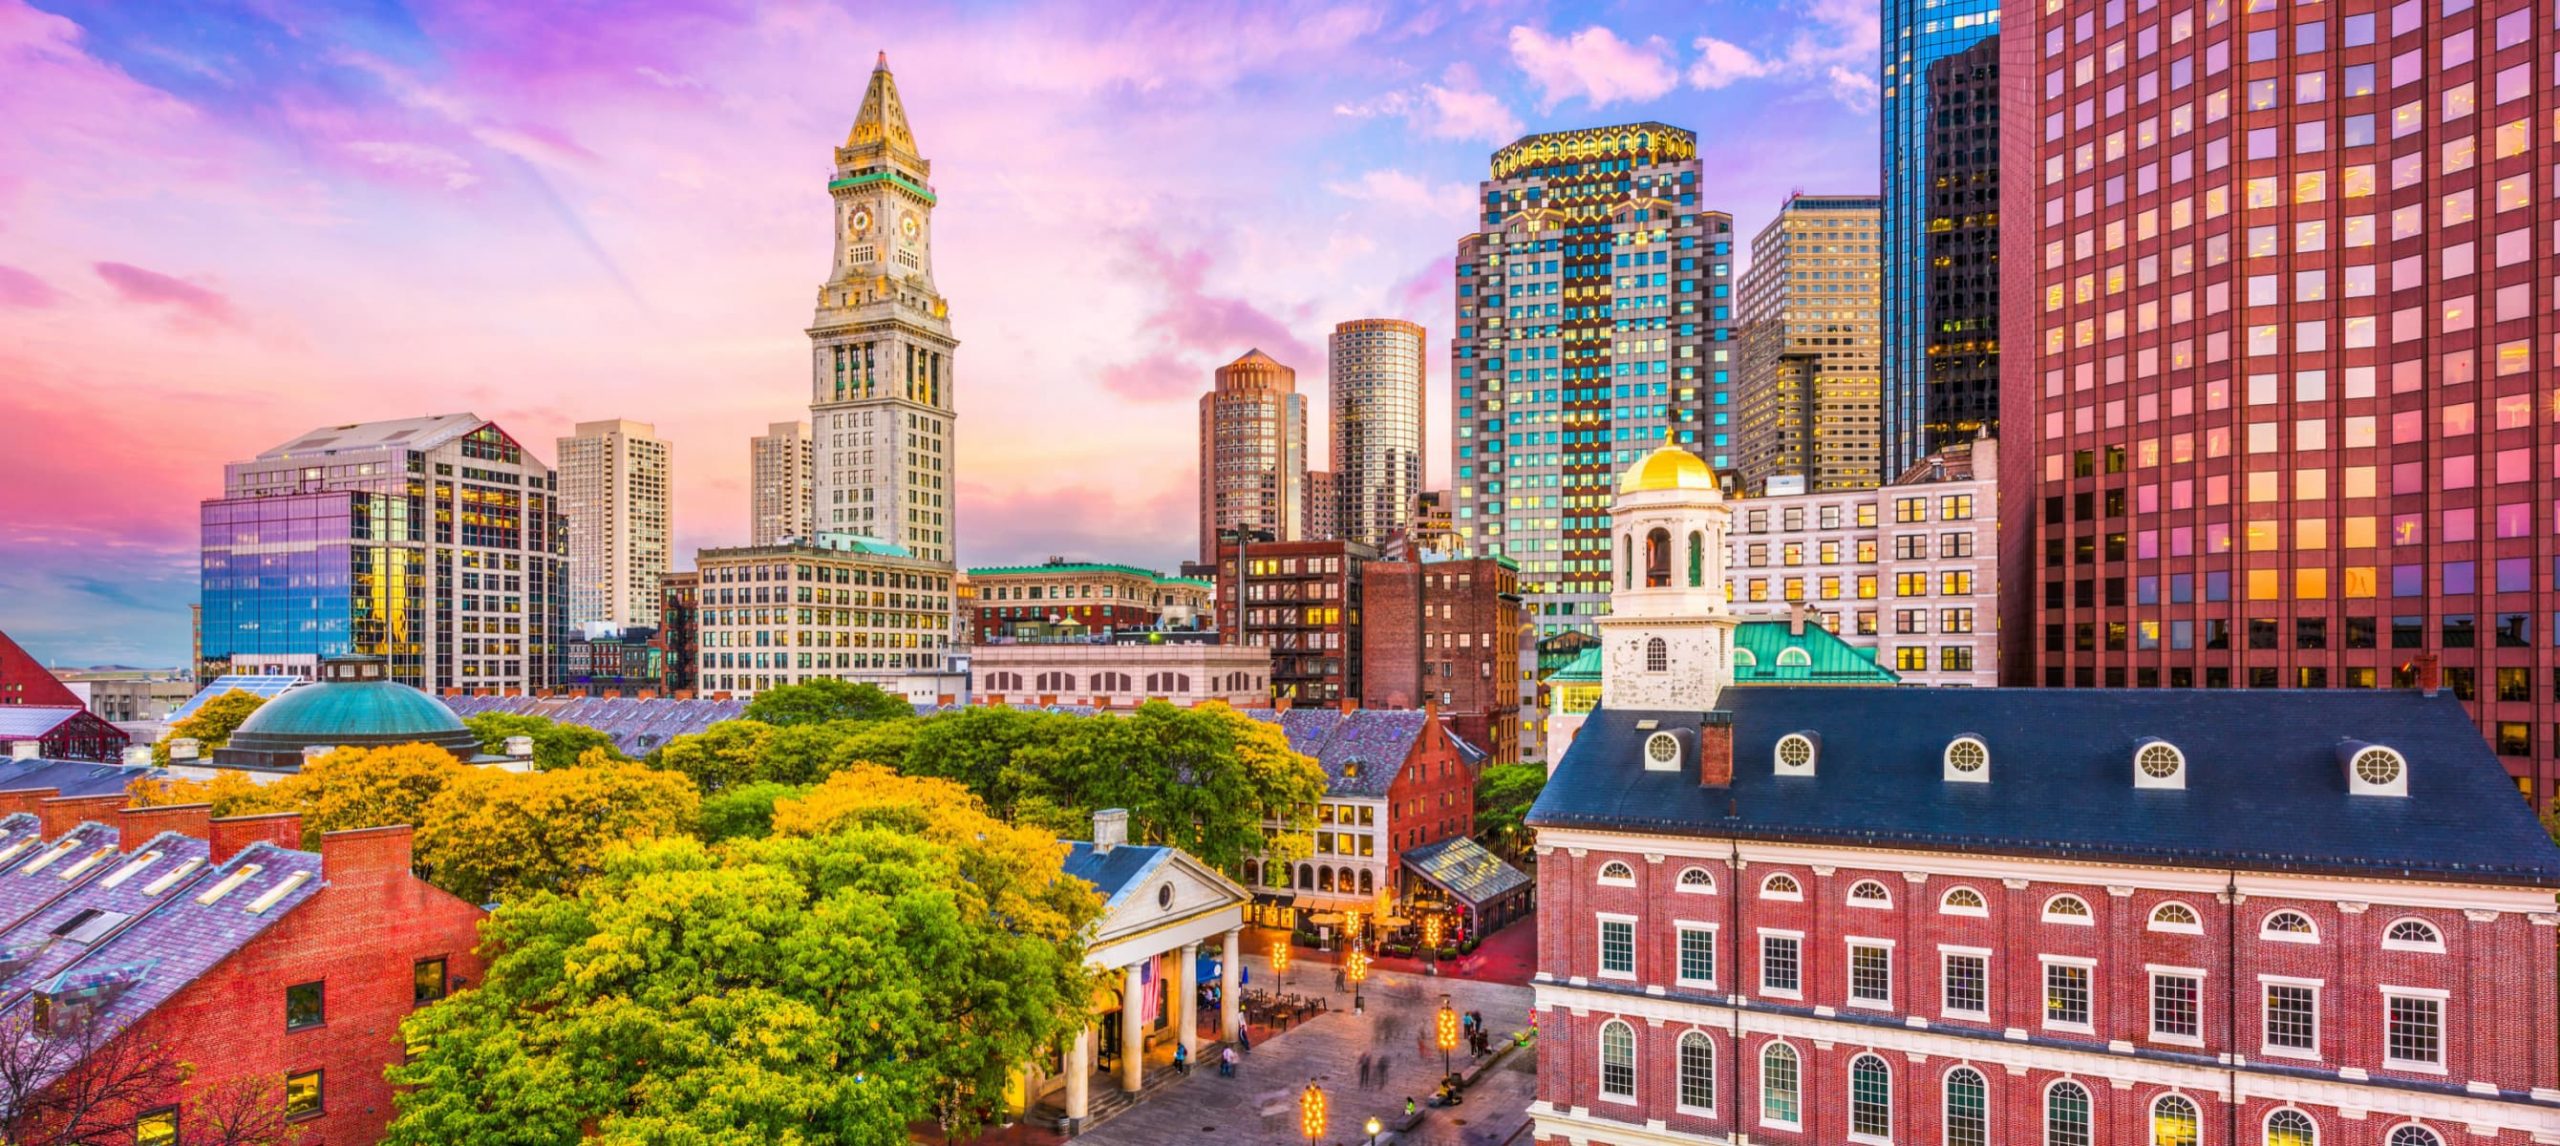 The Best Hotels In Boston, Massachusetts